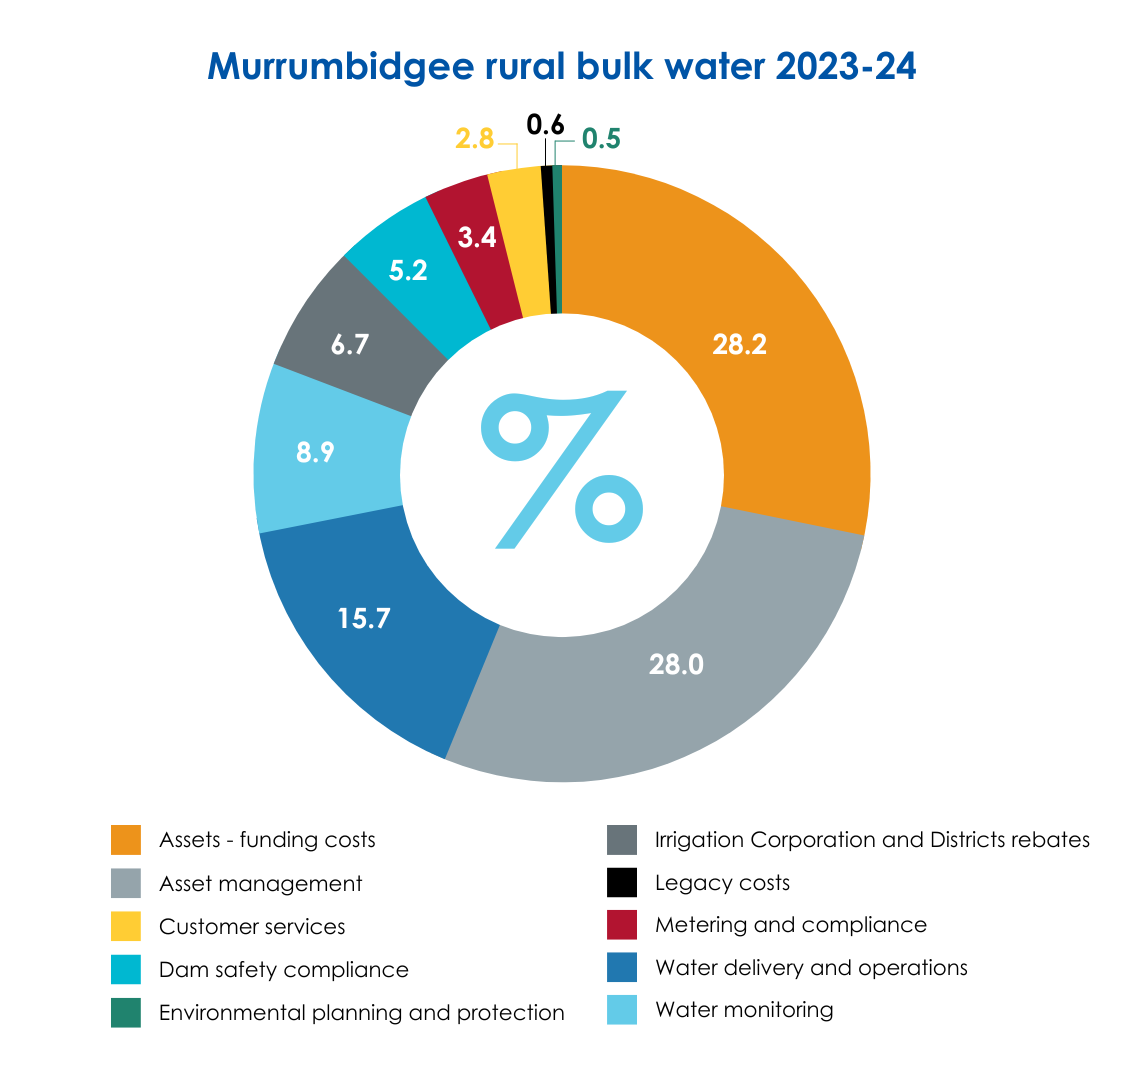 Murrumbidgee rural bulk water 2023-24